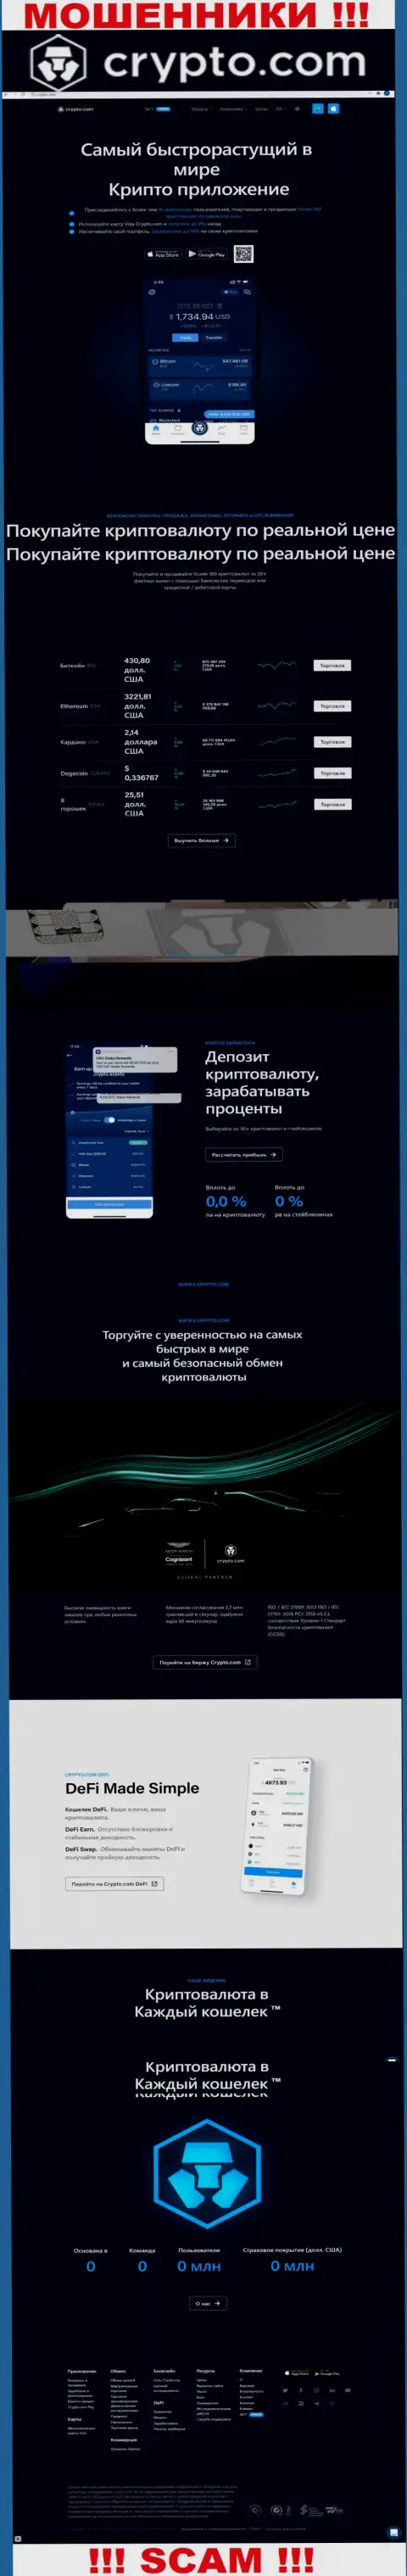 Официальный информационный портал мошенников Crypto Com, заполненный материалами для лохов